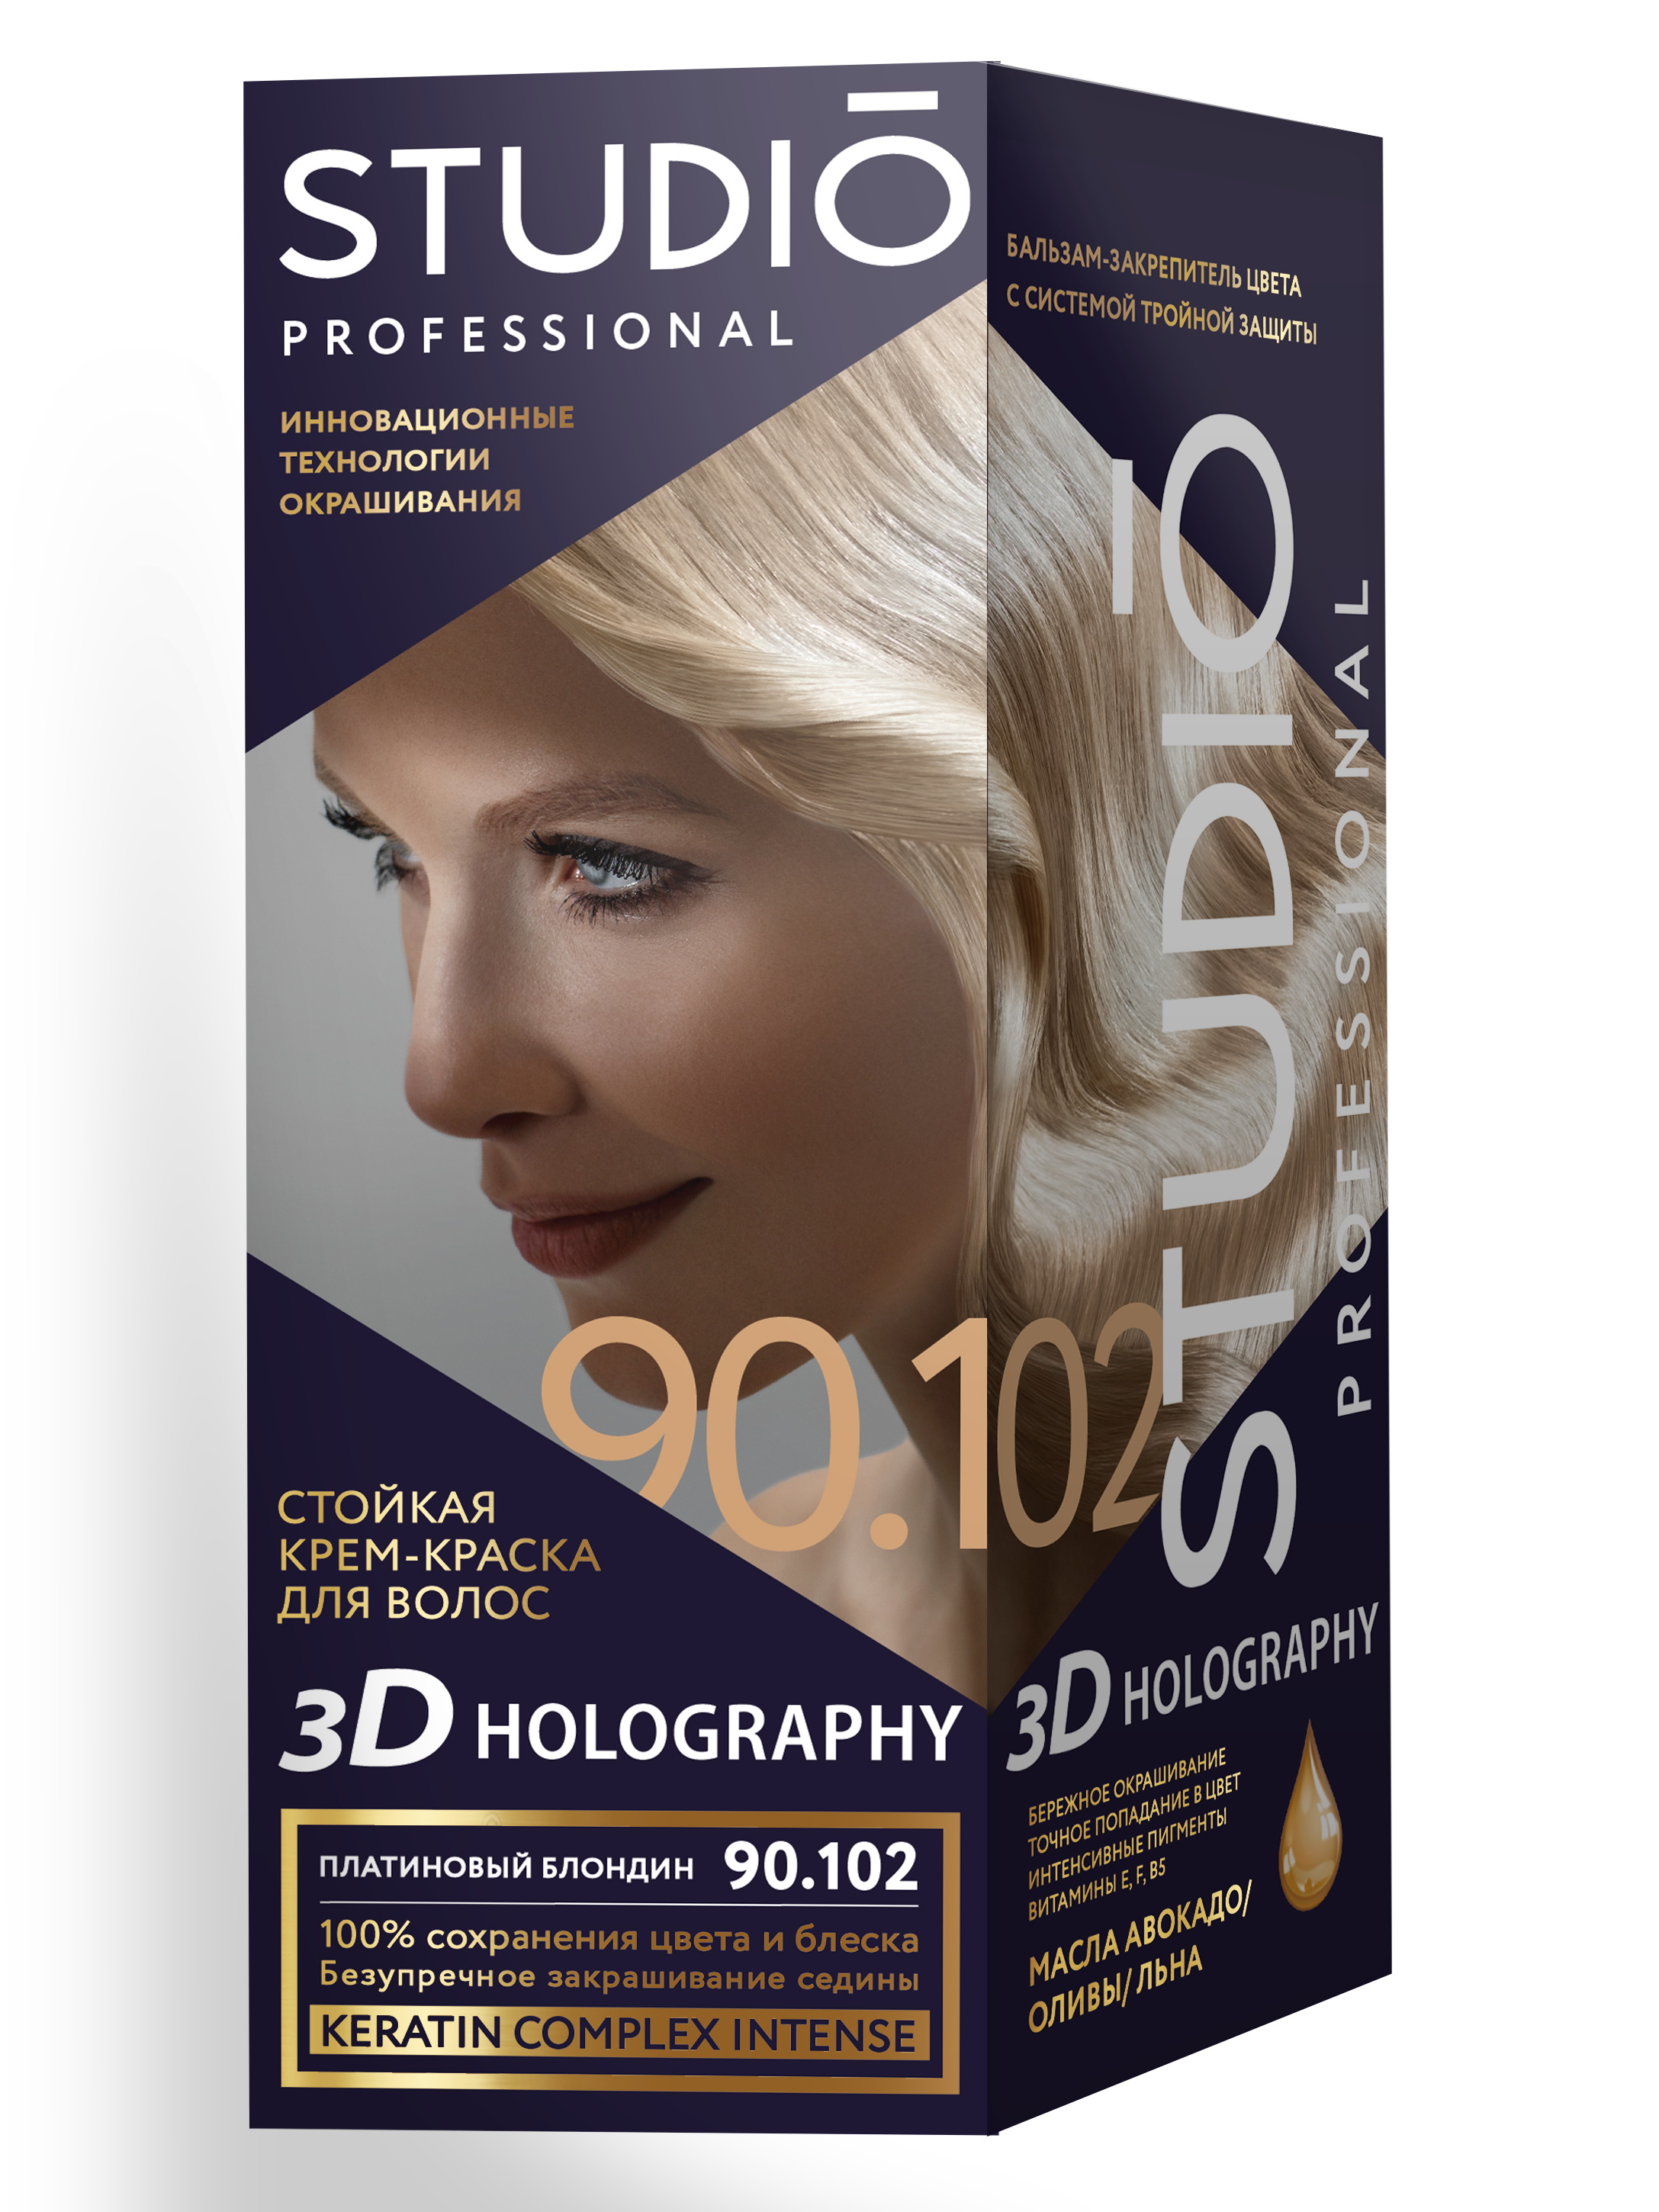 Комплект 3D HOLOGRAPHY STUDIO PROFESSIONAL 90.102 платиновый блондин 2*50+15 мл комплект 3d holography studio professional 3 56 темная вишня 2 50 15 мл